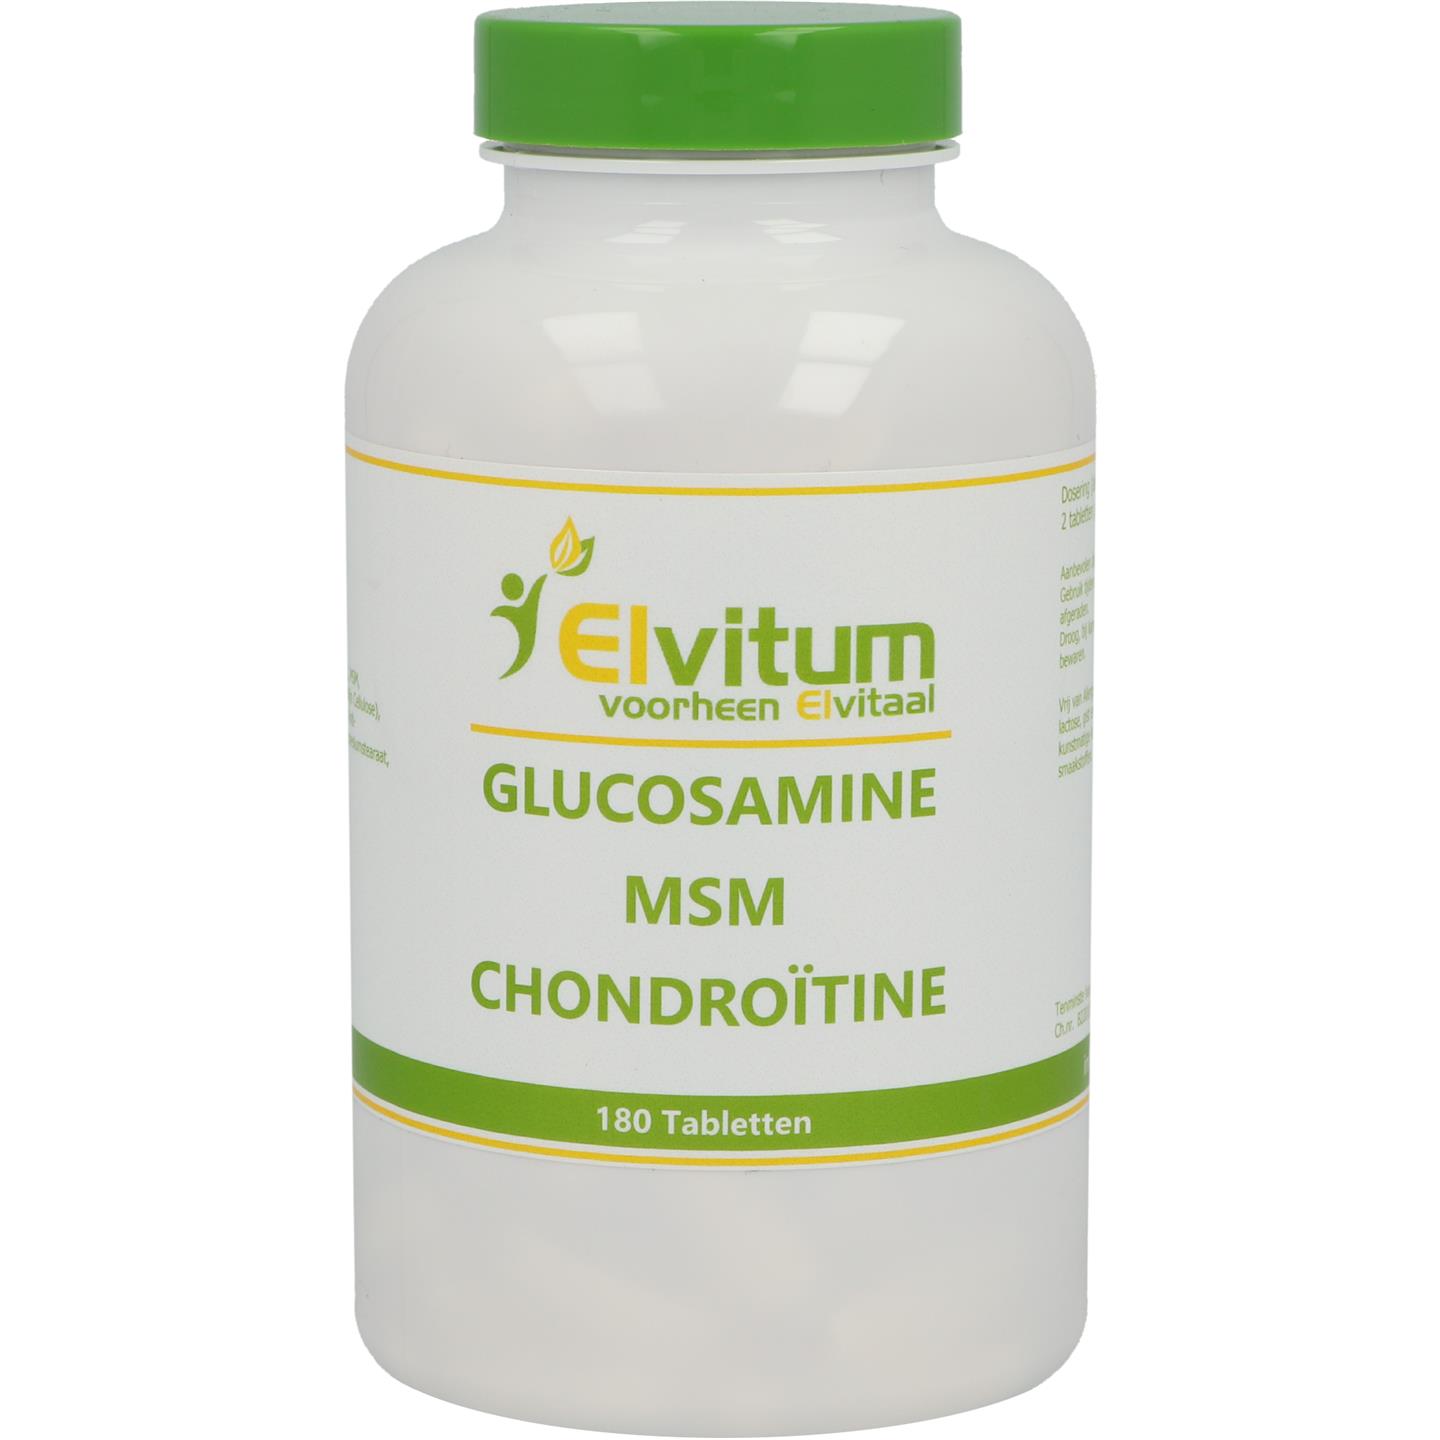 forum analyseren dividend Glucosamine MSM Chondroïtine (Elvitum)